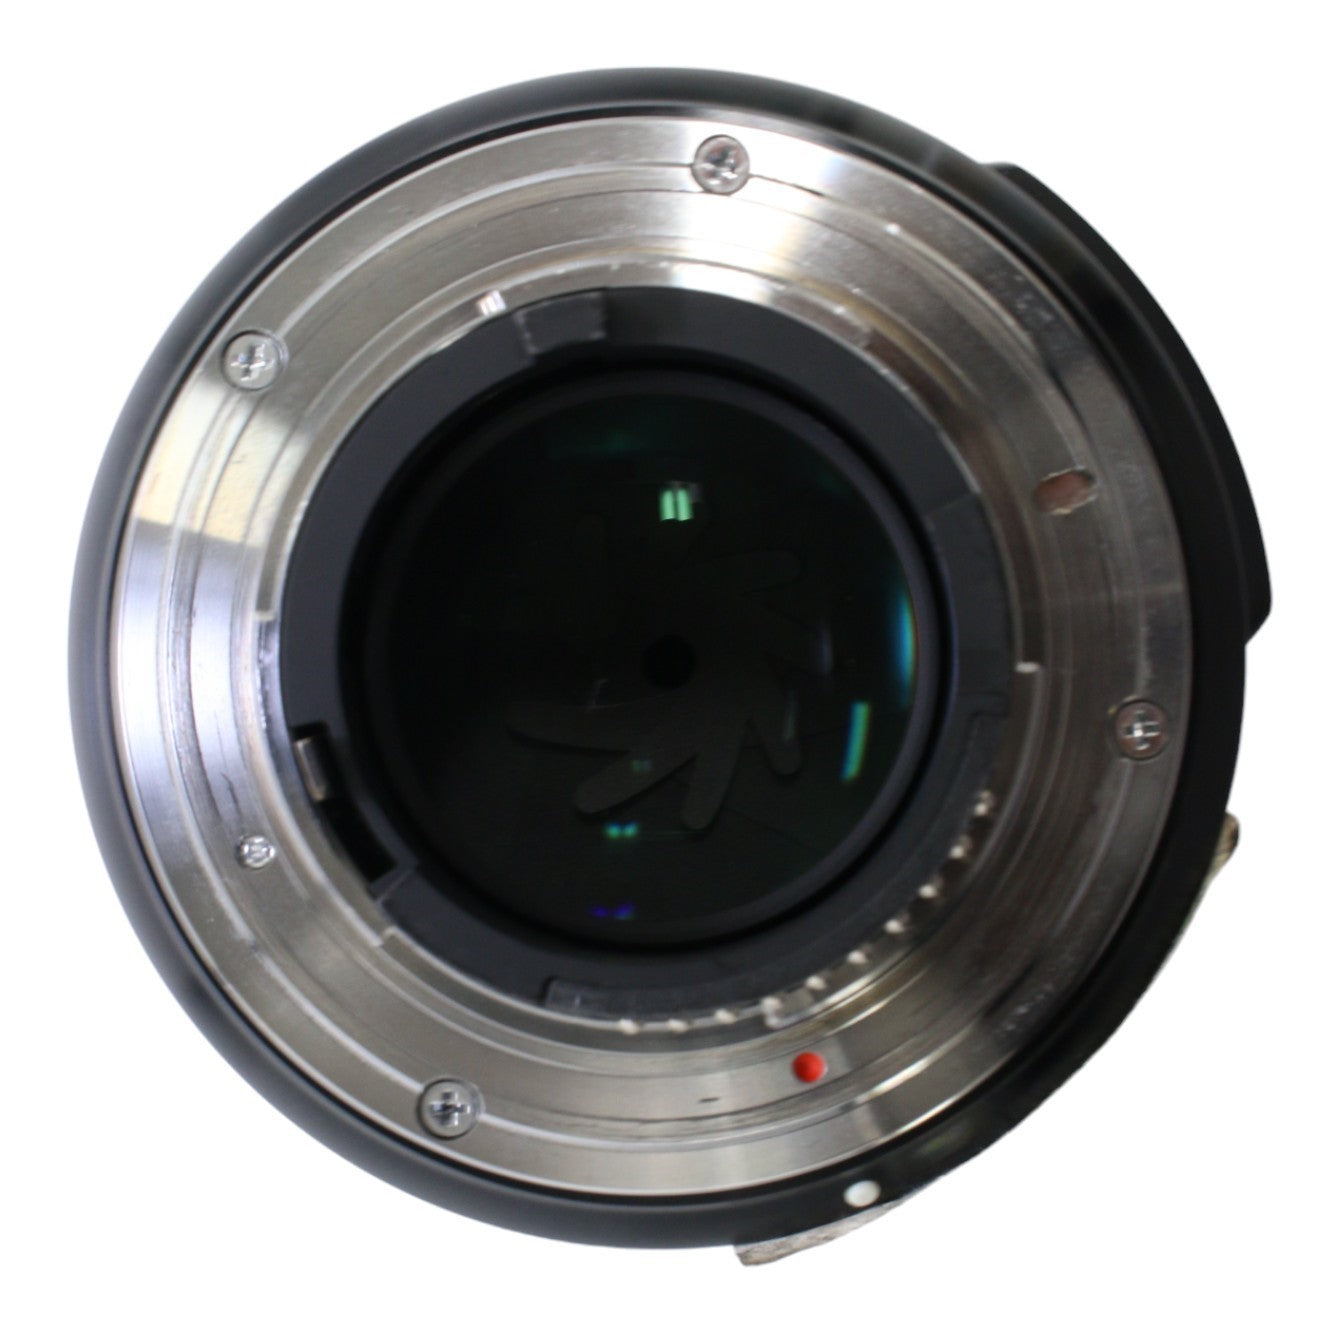 シグマ Art 50mm F1.4 DG HSM 単焦点標準レンズ (NIKON Fマウント) 311551 [中古][良い(B)]